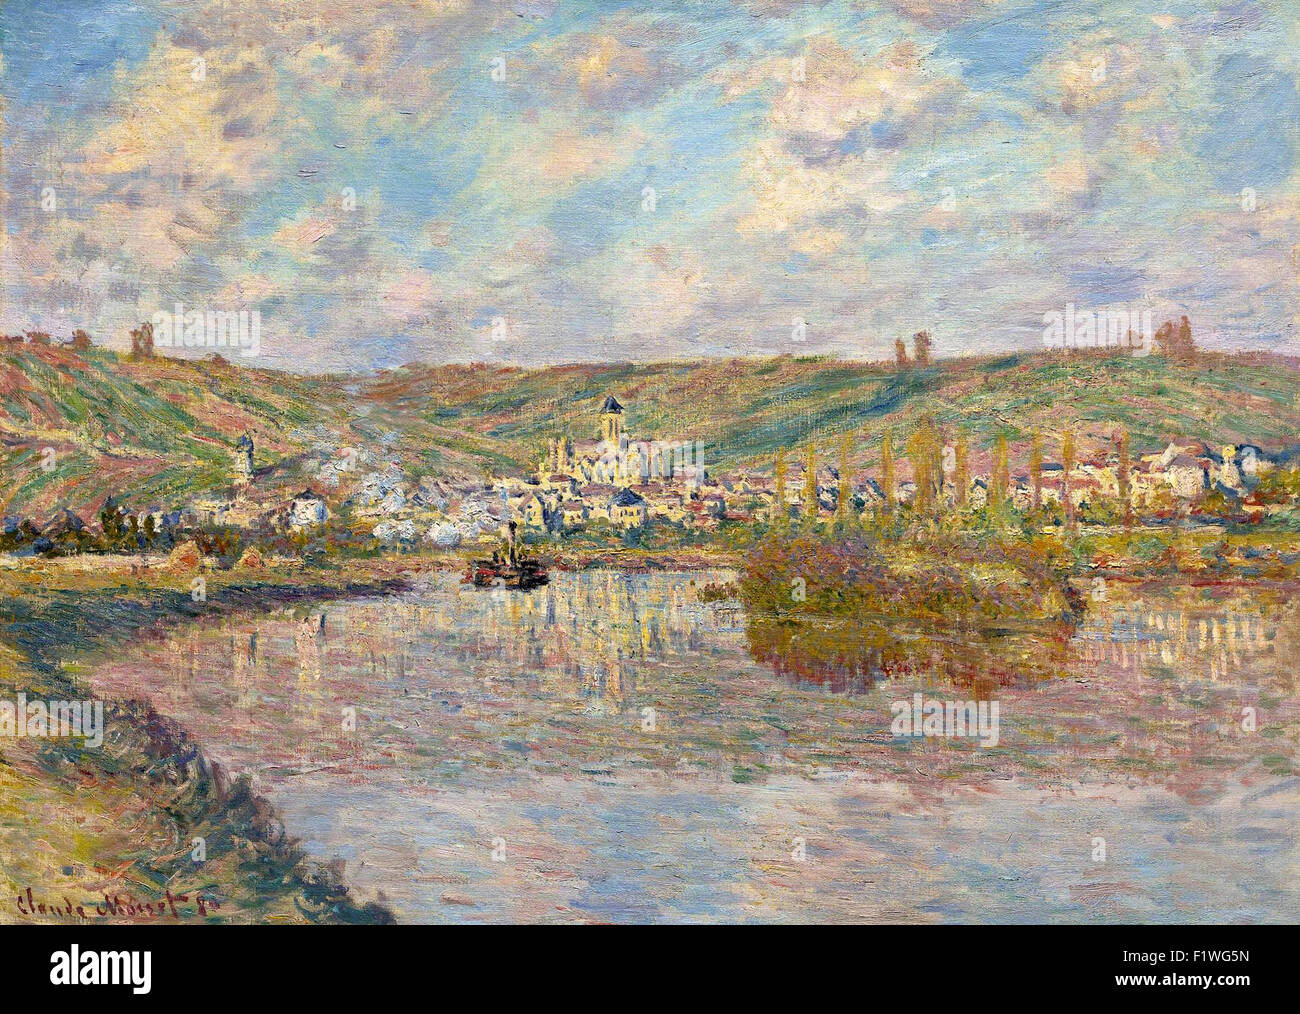 Claude Monet - Fin d'après midi, Vétheuil Stock Photo